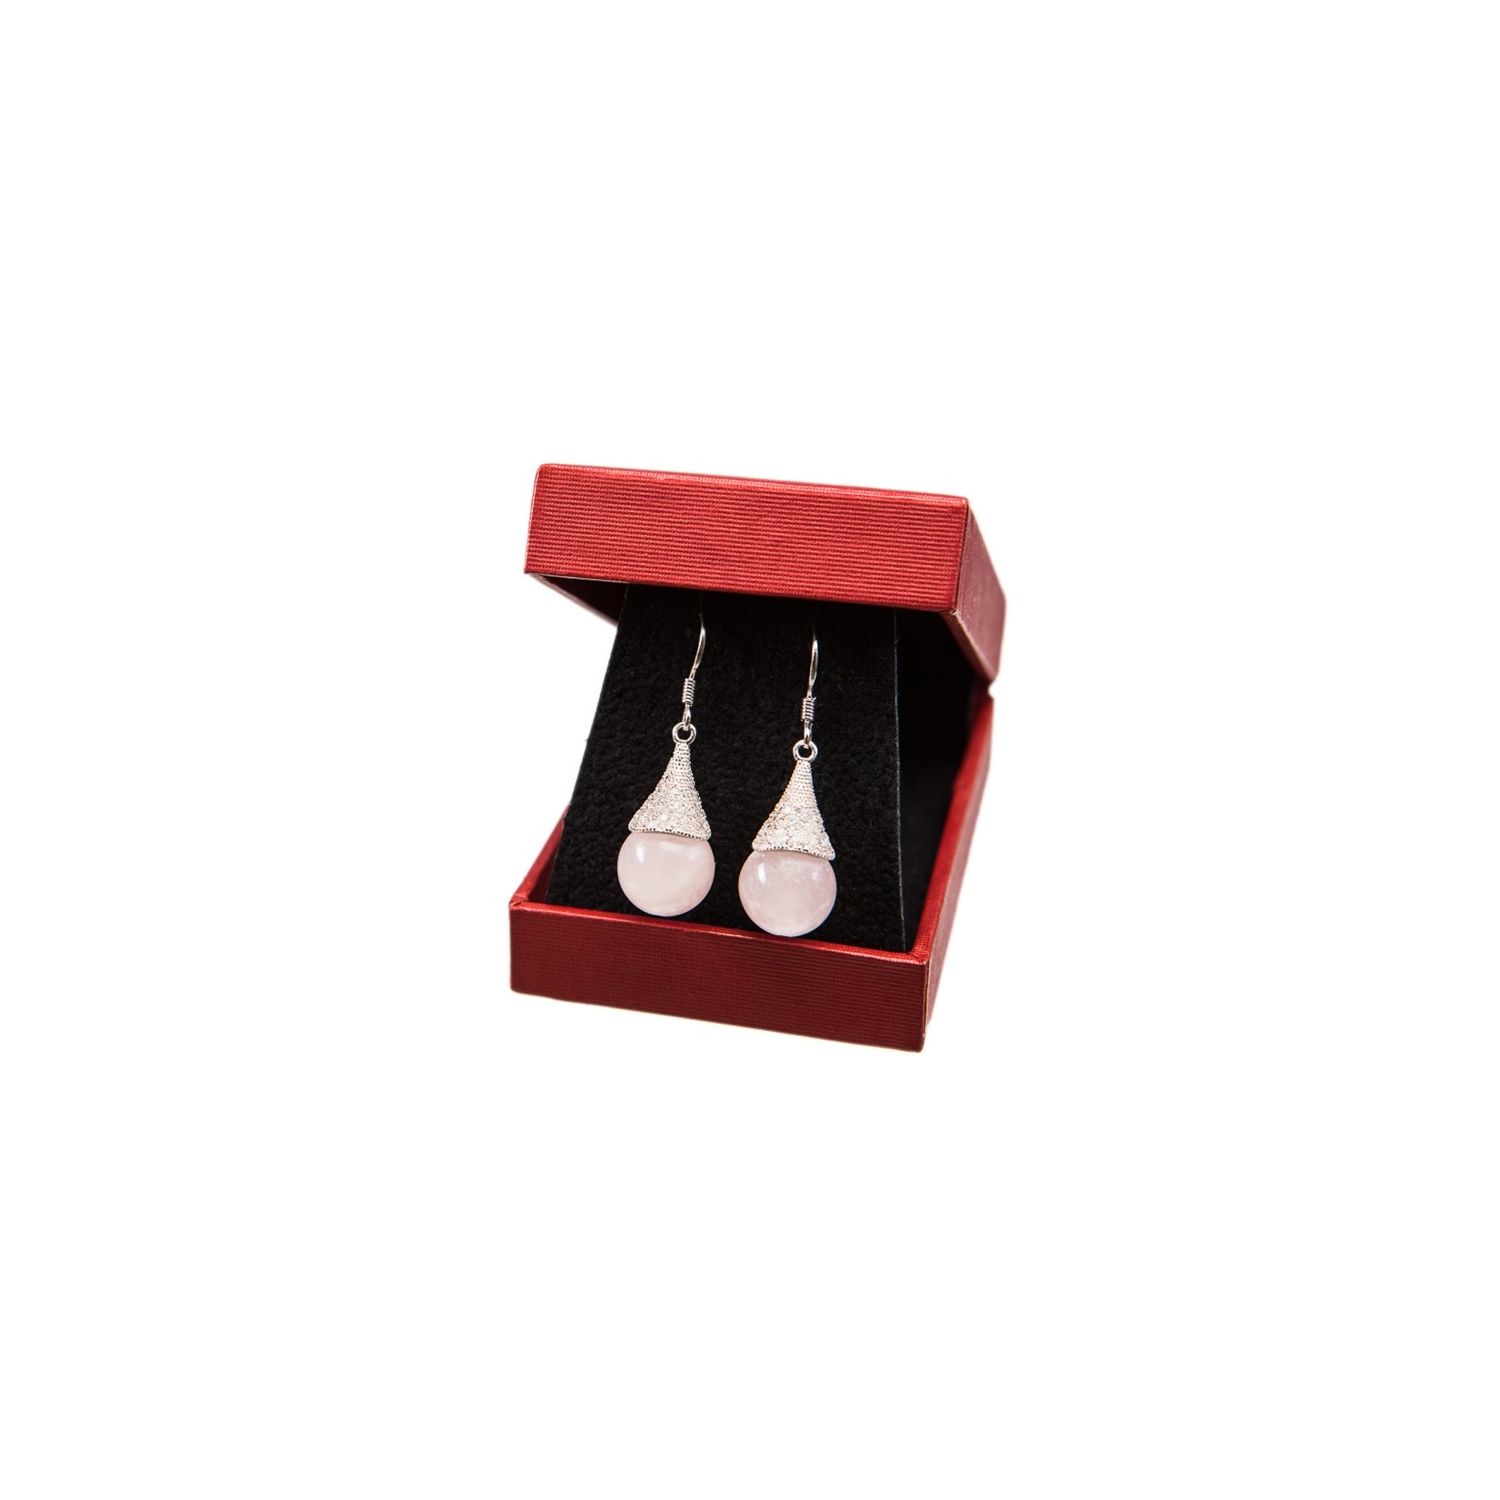 Sterling silver rose quartz earrings